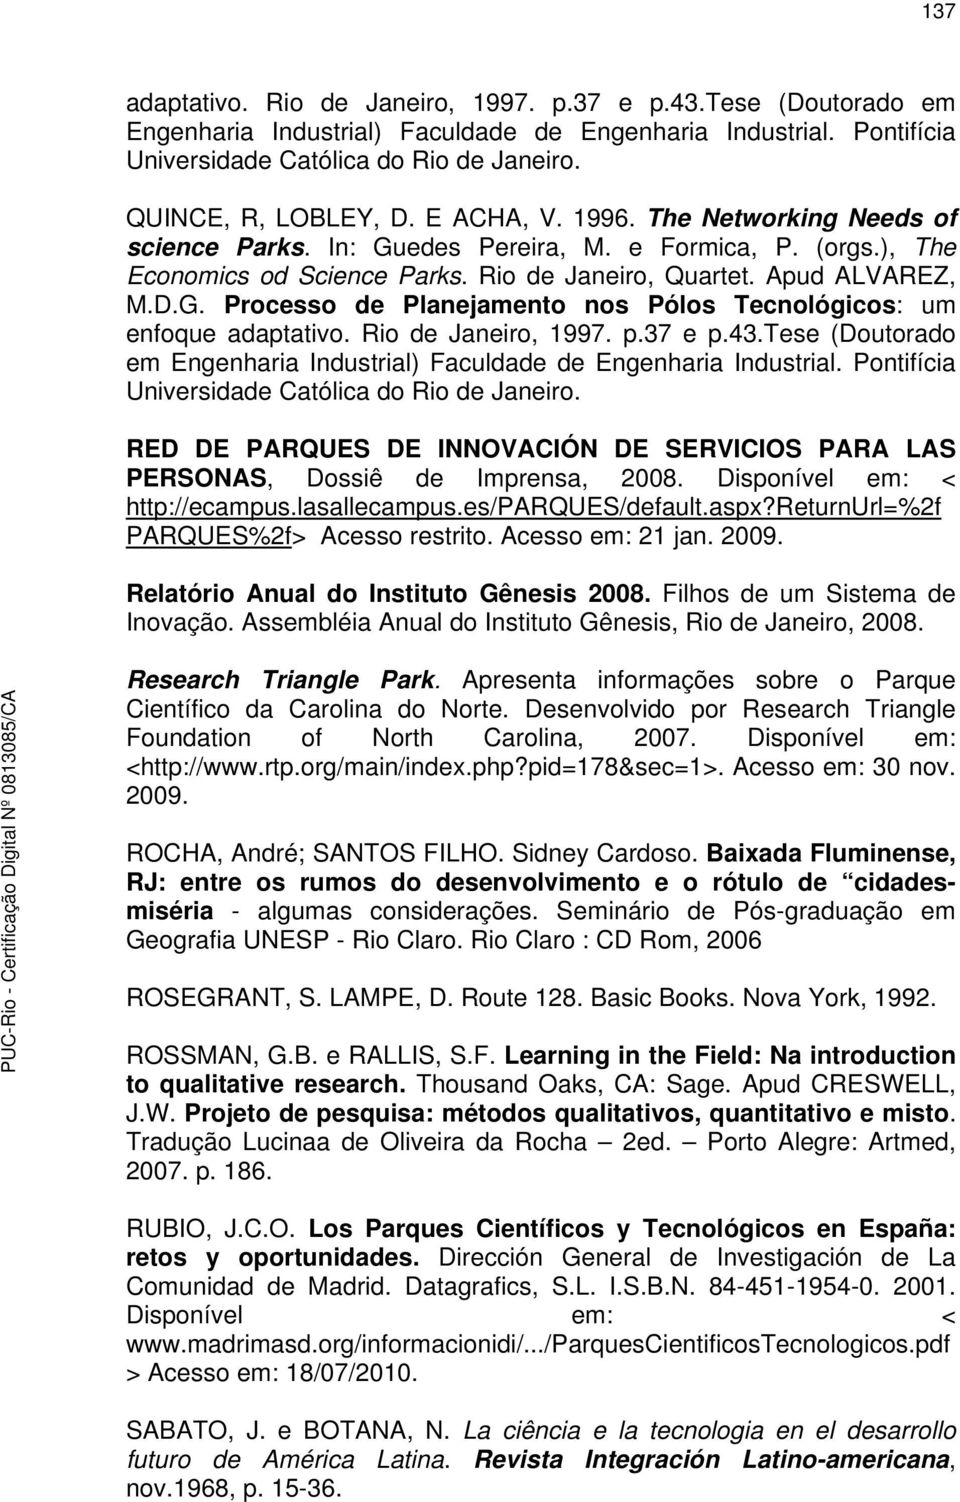 Rio de Janeiro, 1997. p.37 e p.43.tese (Doutorado em Engenharia Industrial) Faculdade de Engenharia Industrial. Pontifícia Universidade Católica do Rio de Janeiro.